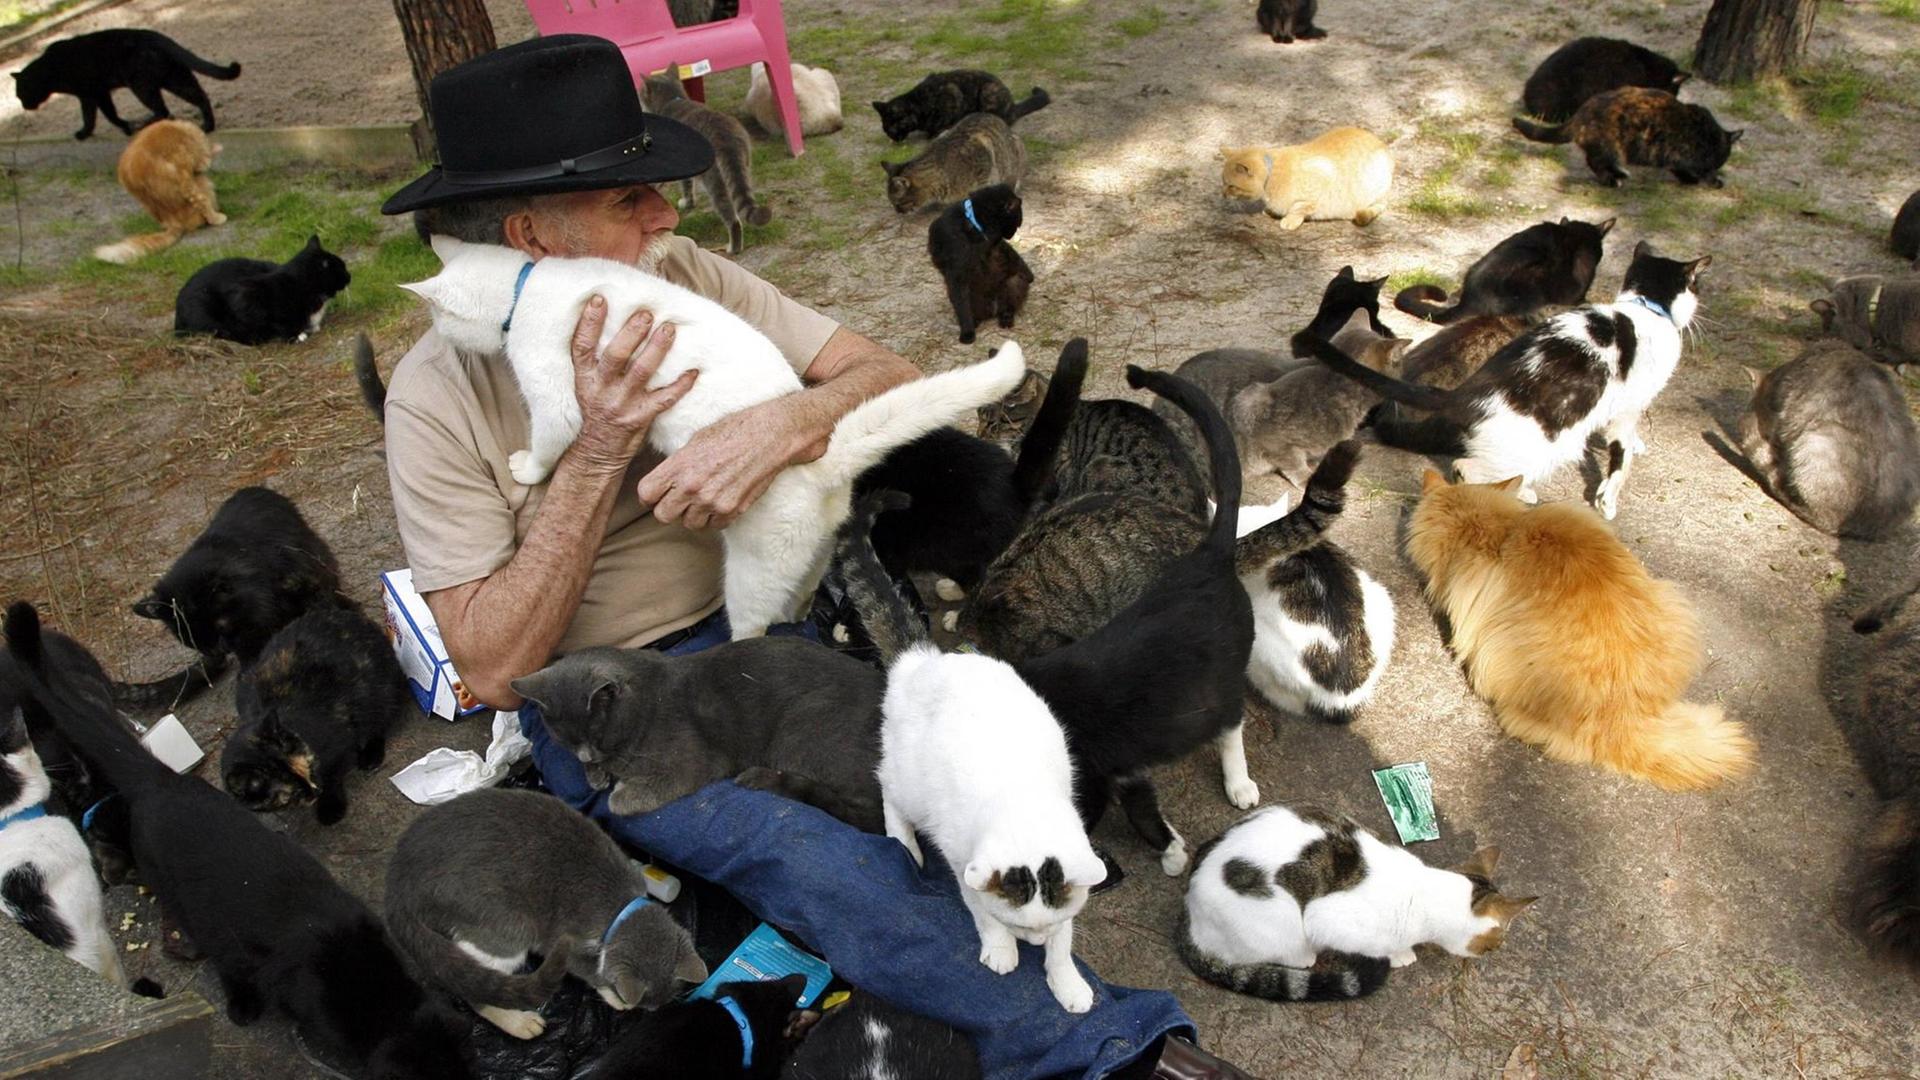 Ein Mann sitzt mit Katzen auf dem Arm und auf dem Schoß sowie umgeben von zwei Duzend Katzen draußen auf dem Boden.